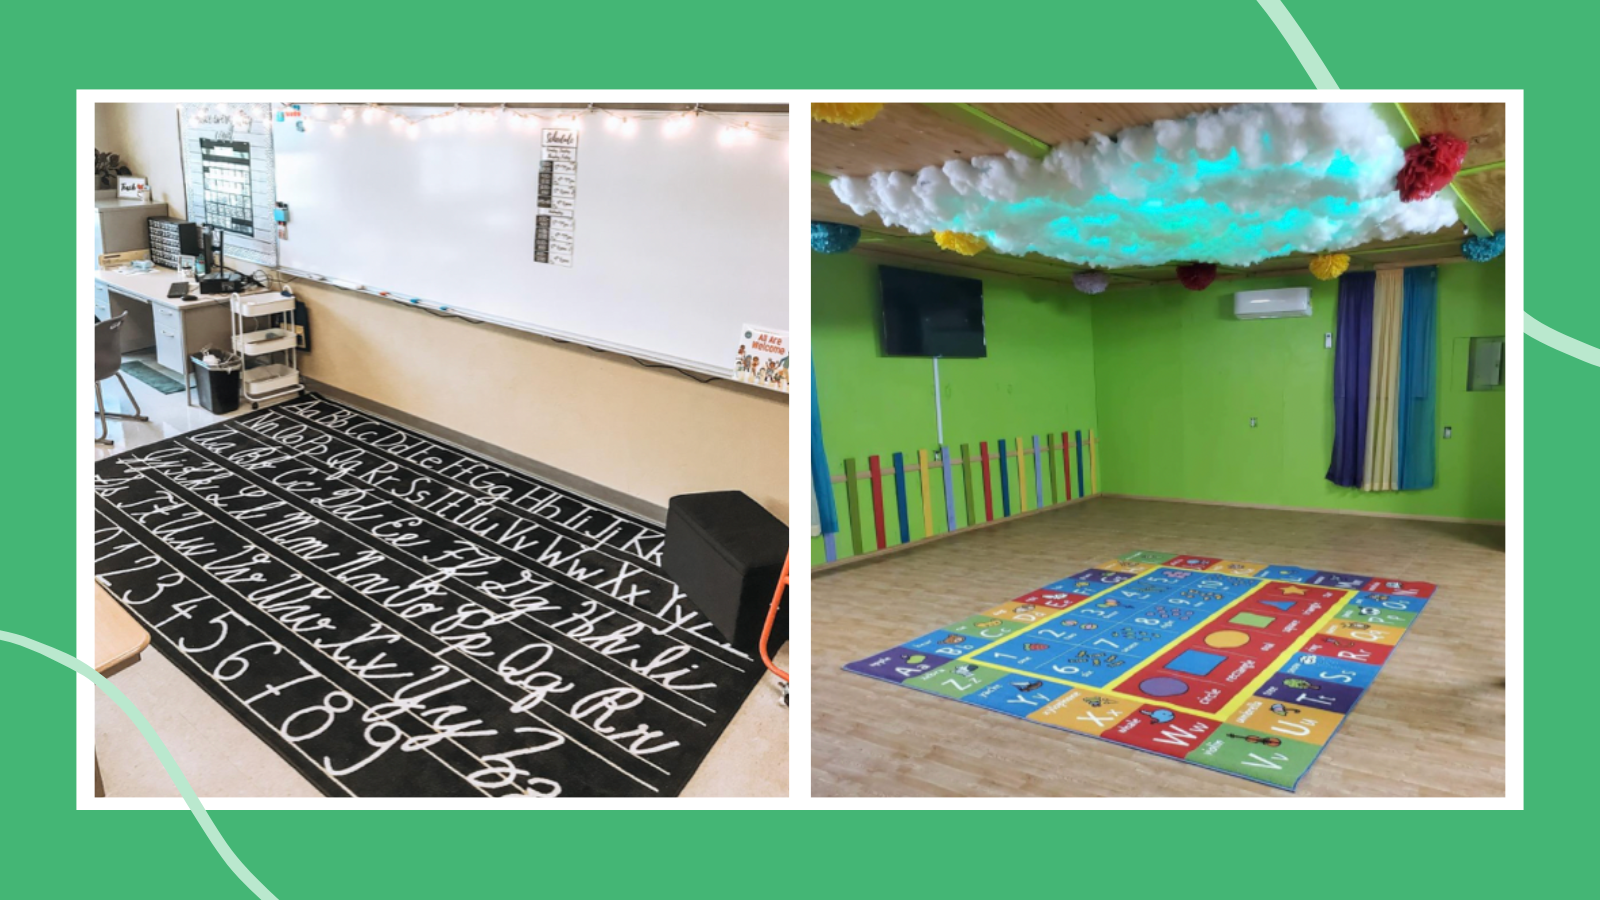 Colorful Floor Sensory Path Set Printable Hopscotch for Nursery School,  Home, Restaurant, Hospital Montessori Material 